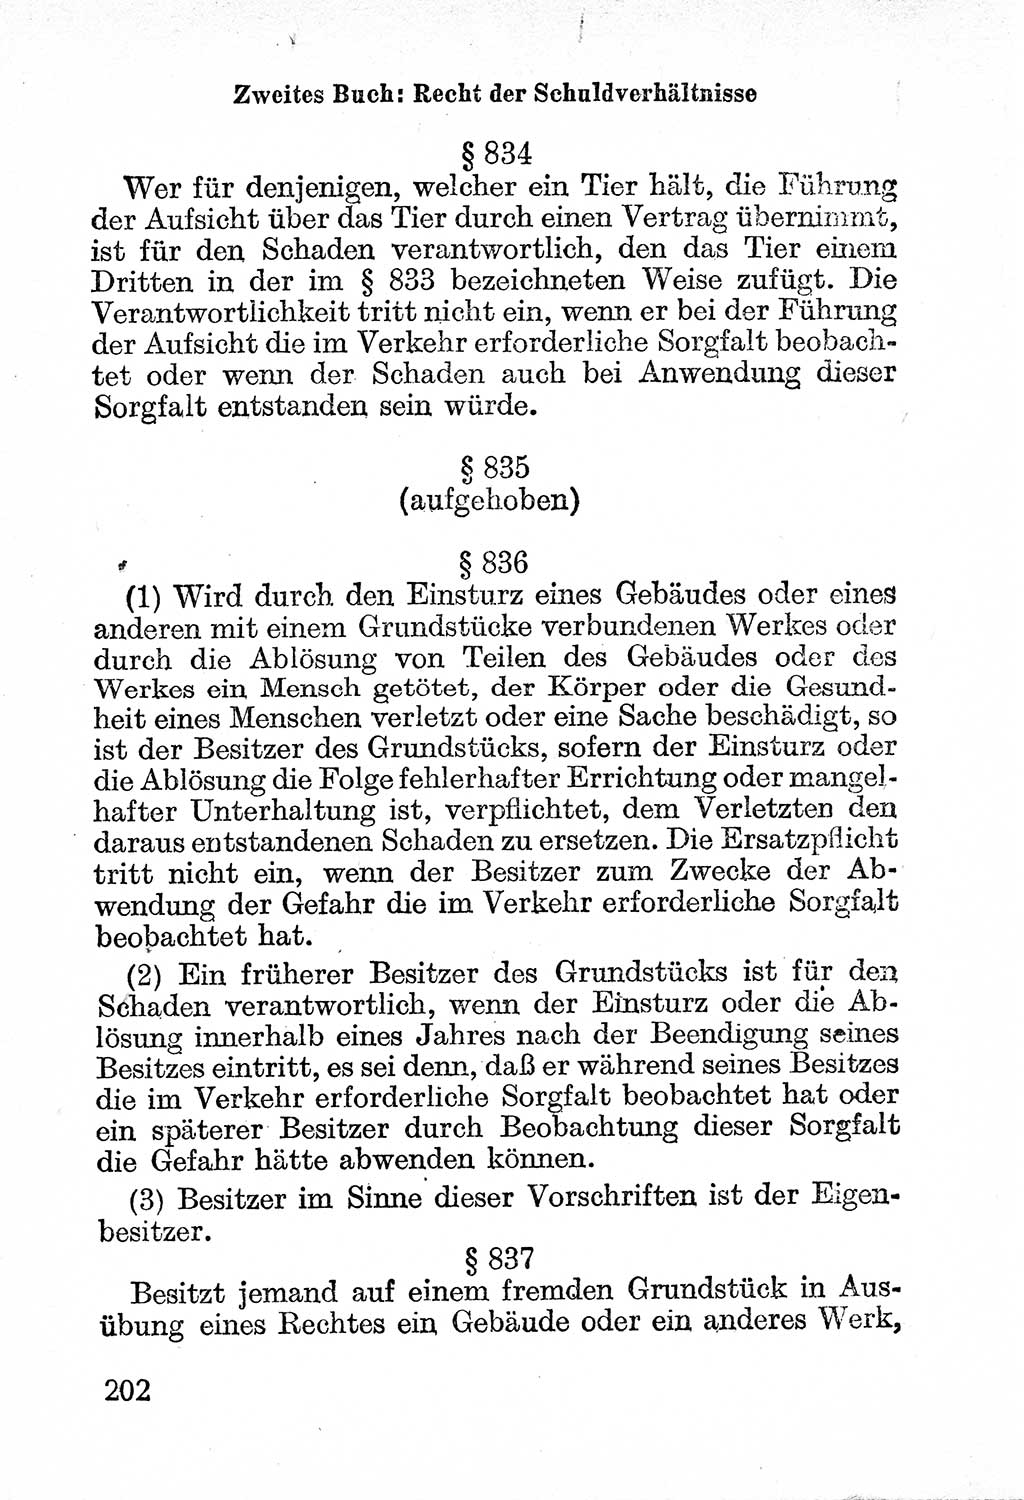 Bürgerliches Gesetzbuch (BGB) nebst wichtigen Nebengesetzen [Deutsche Demokratische Republik (DDR)] 1956, Seite 202 (BGB Nebenges. DDR 1956, S. 202)